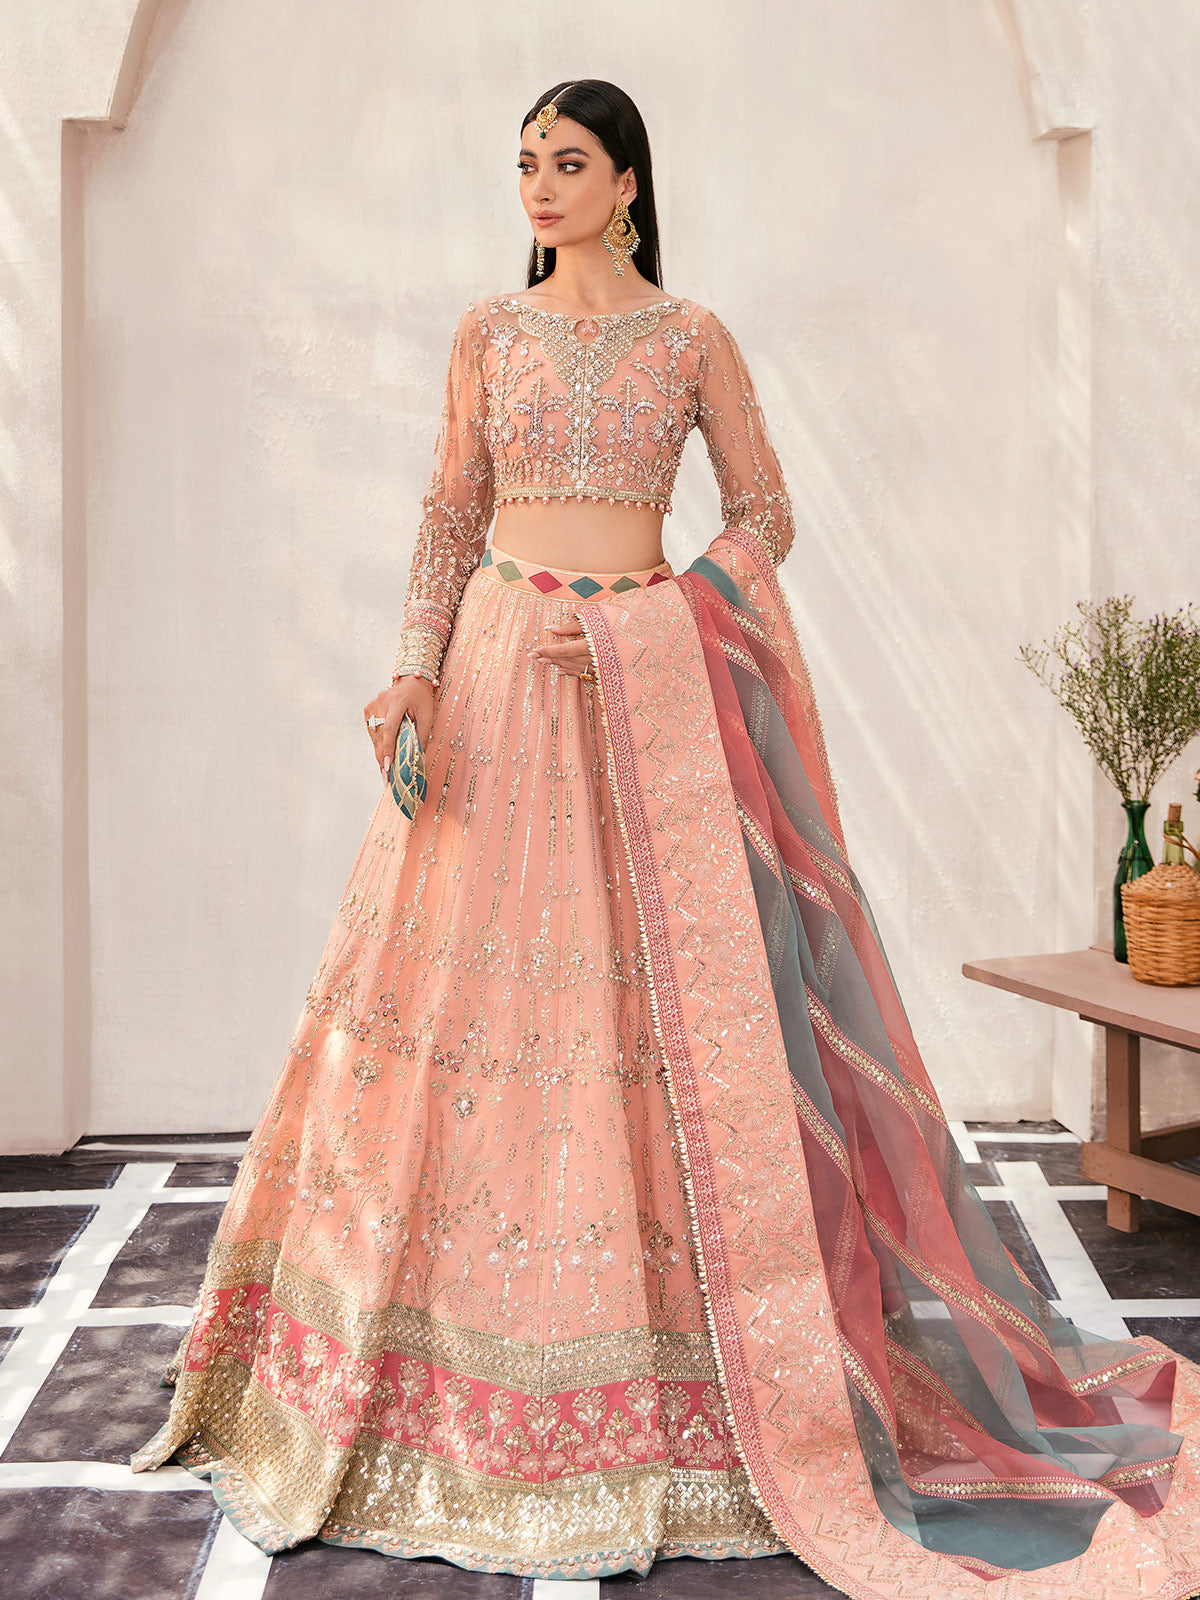 Afreen GL-WS-22V1-29 (peach lehnga choli) Zaryaab Wedding Formals Collection by Gulaal